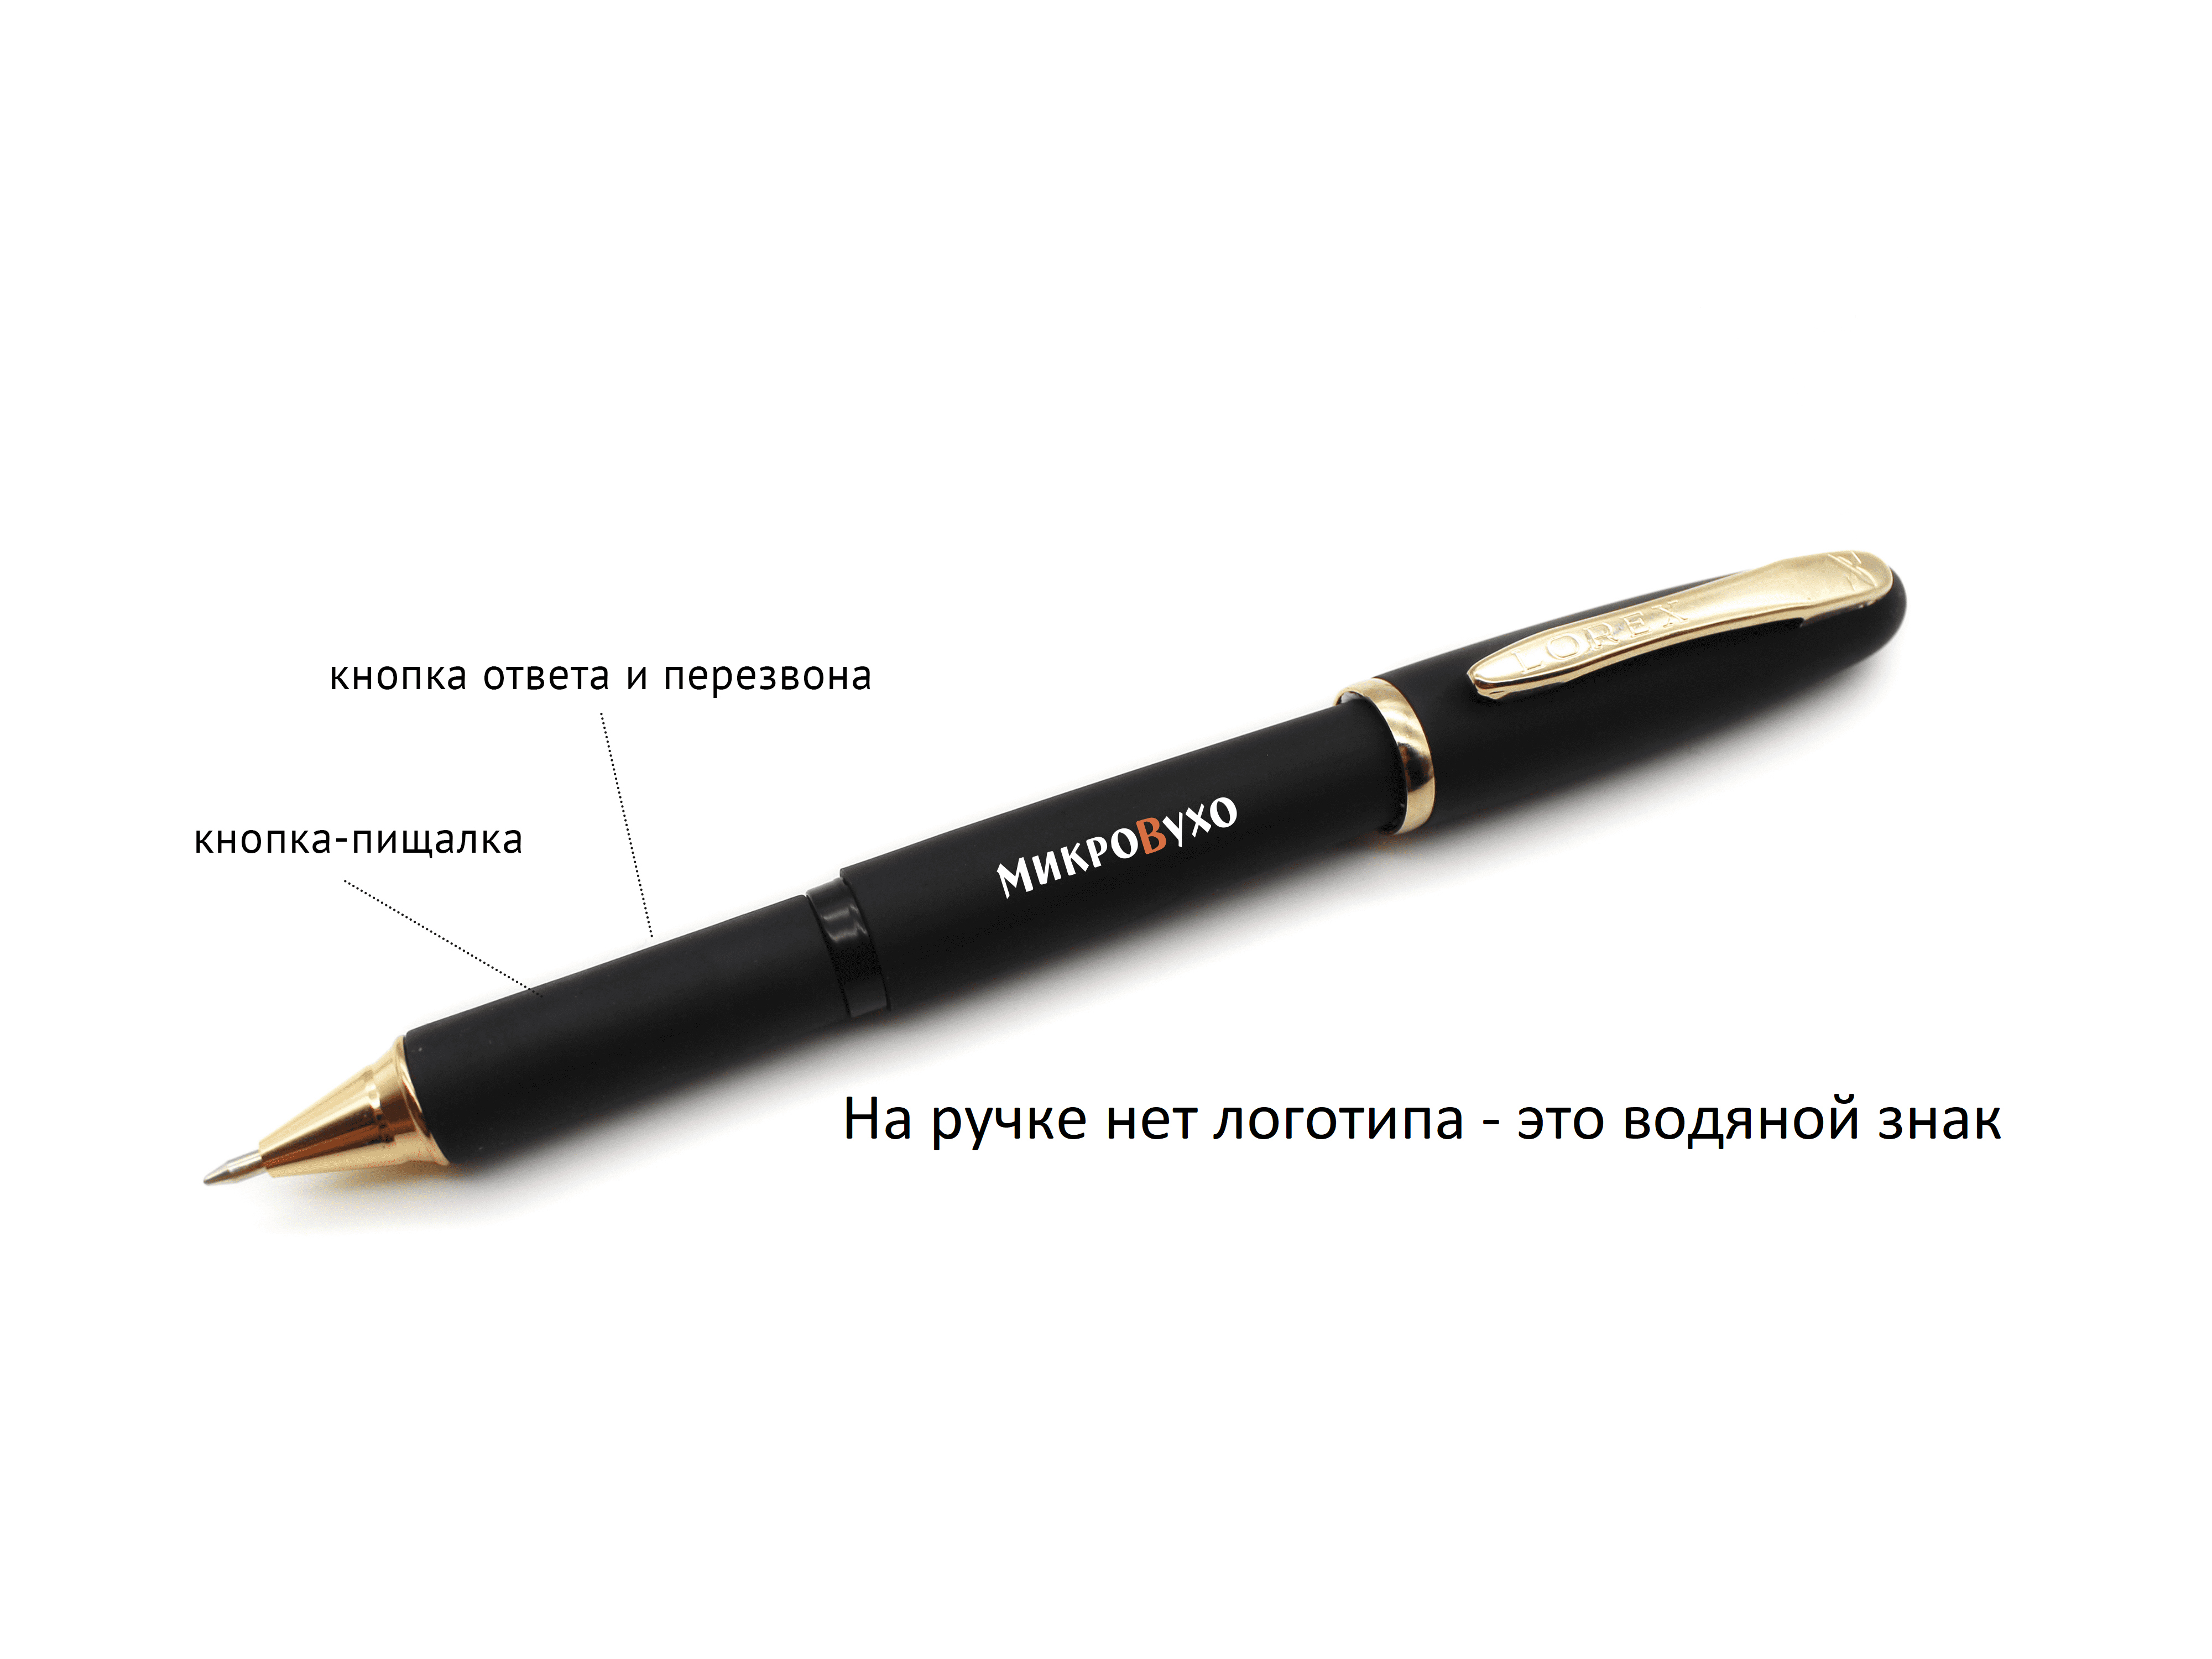 Аренда микронаушника Ручка Business c капсульным микронаушником Premium 2